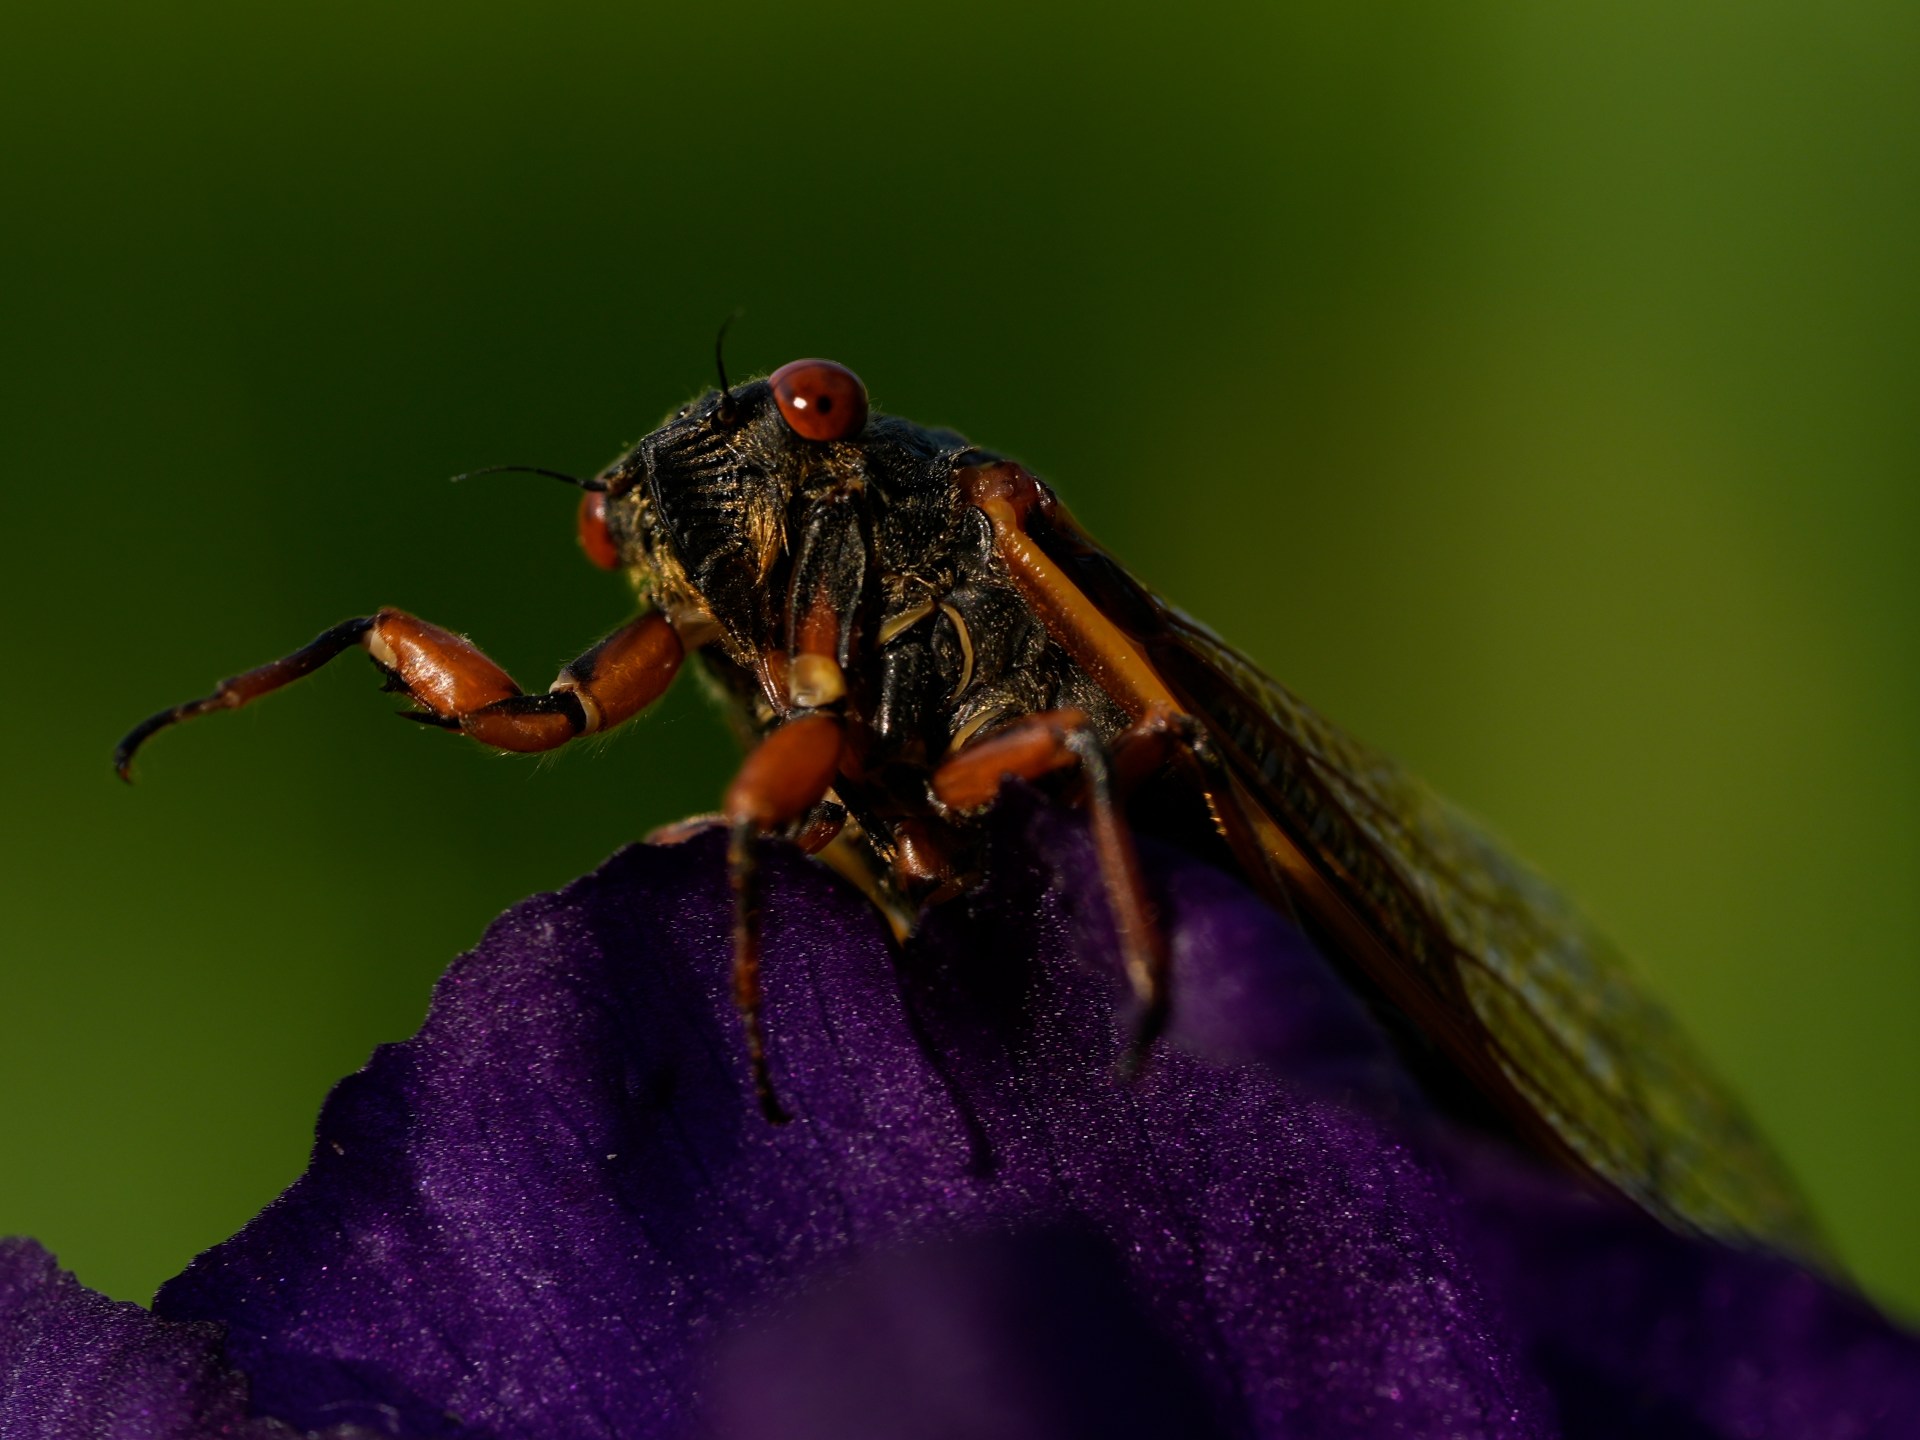 الصور: عن قرب وبشكل شخصي، تعرض حشرات الزيز الأعمال الفنية للطبيعة |  بيئة